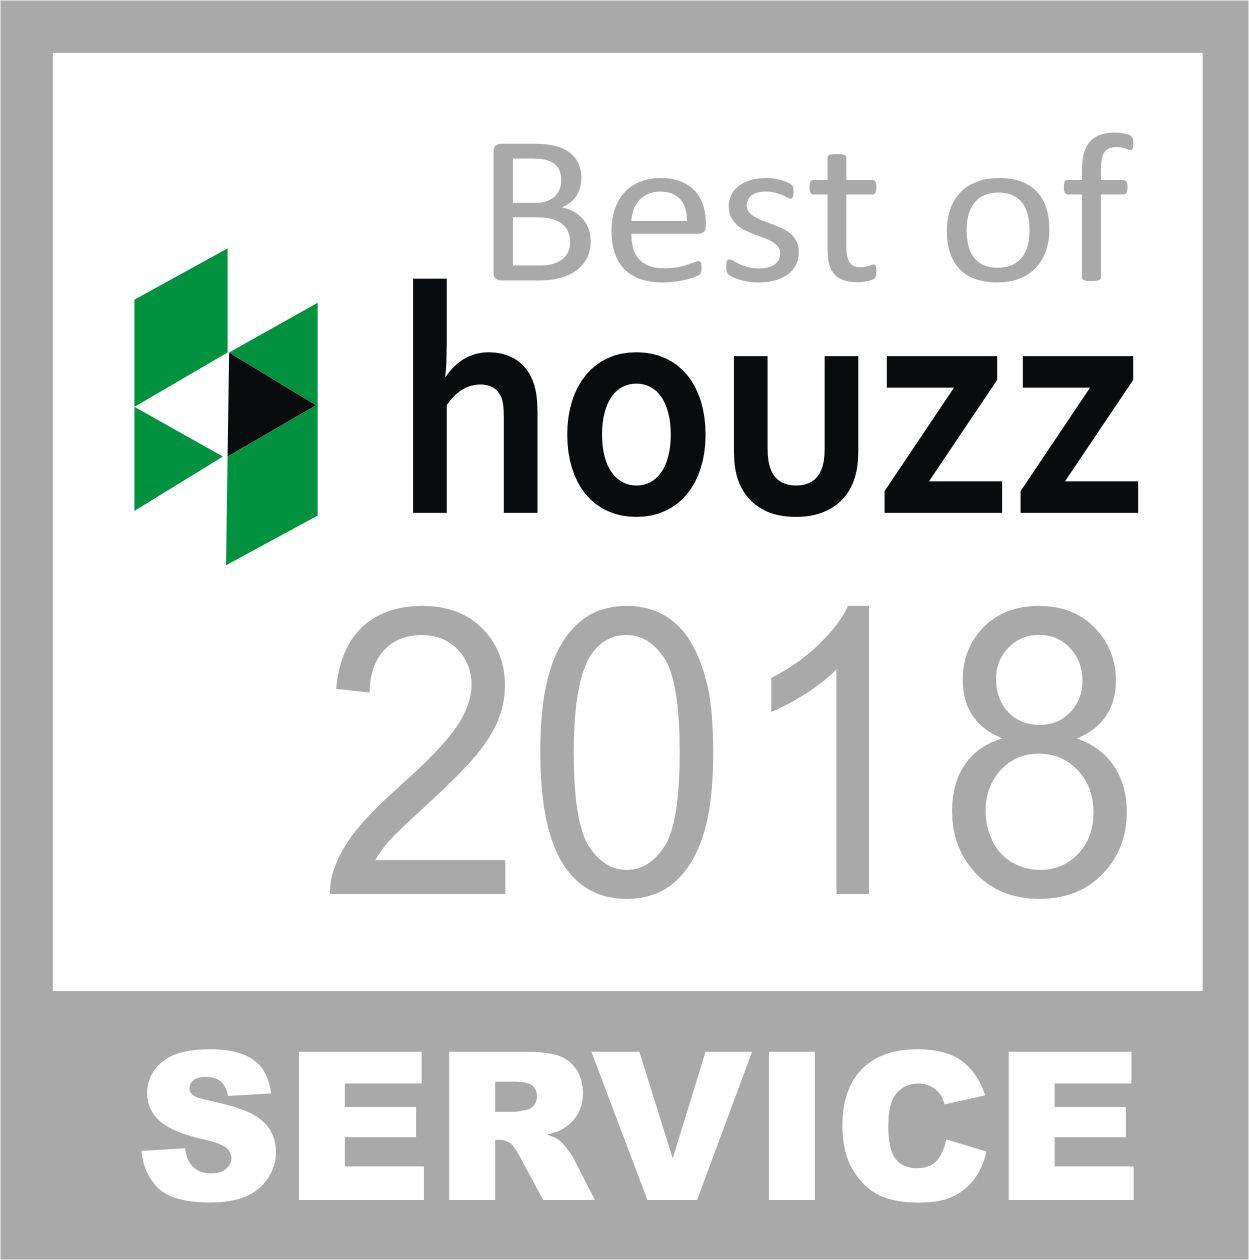 Best of Houzz Logo - DeSantis Landscapes of Salem, OR Awarded Best Of Houzz 2018 ...